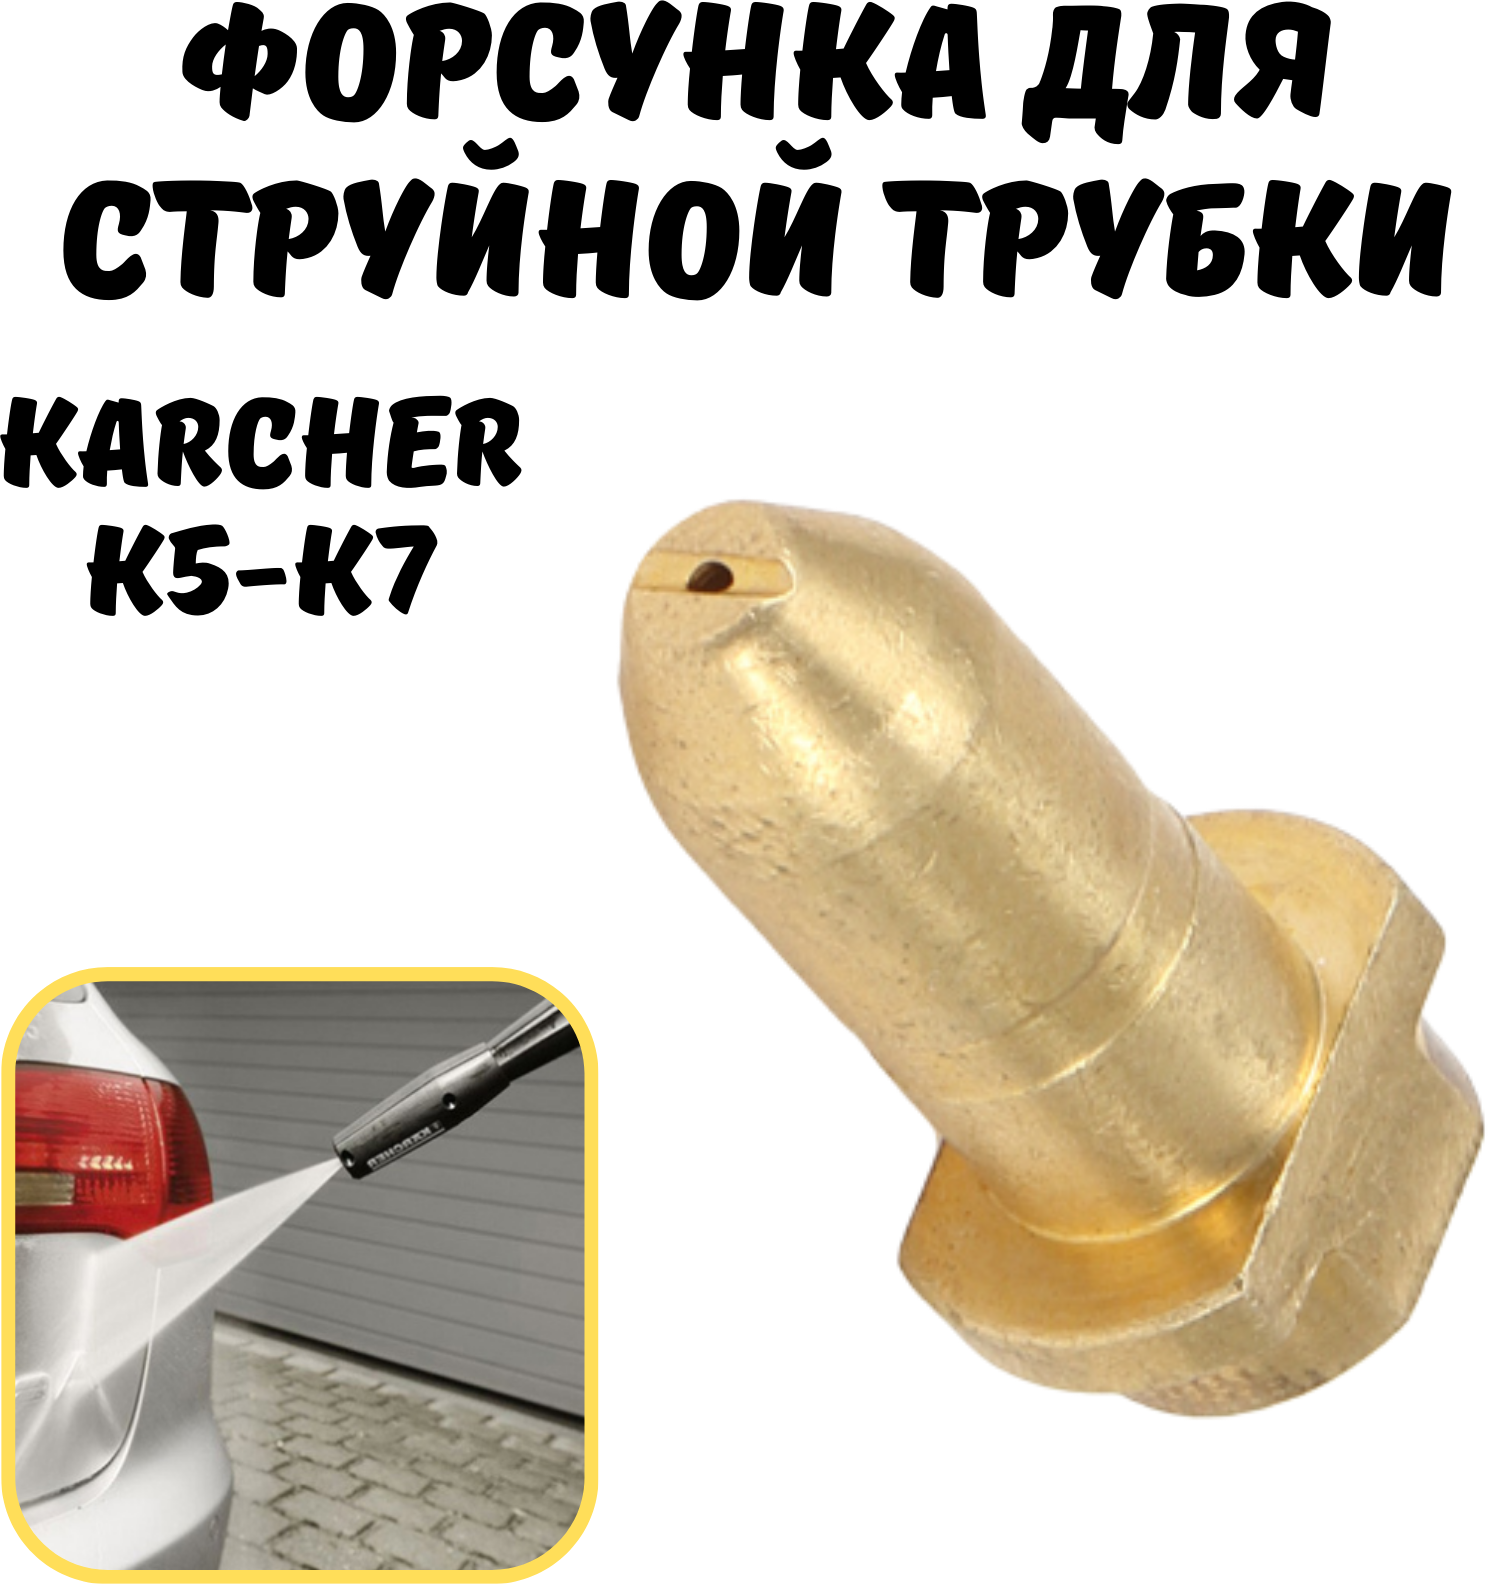 Латунная форсунка для струйной трубки Karcher К5 - К7(аналог, ремкомплект)